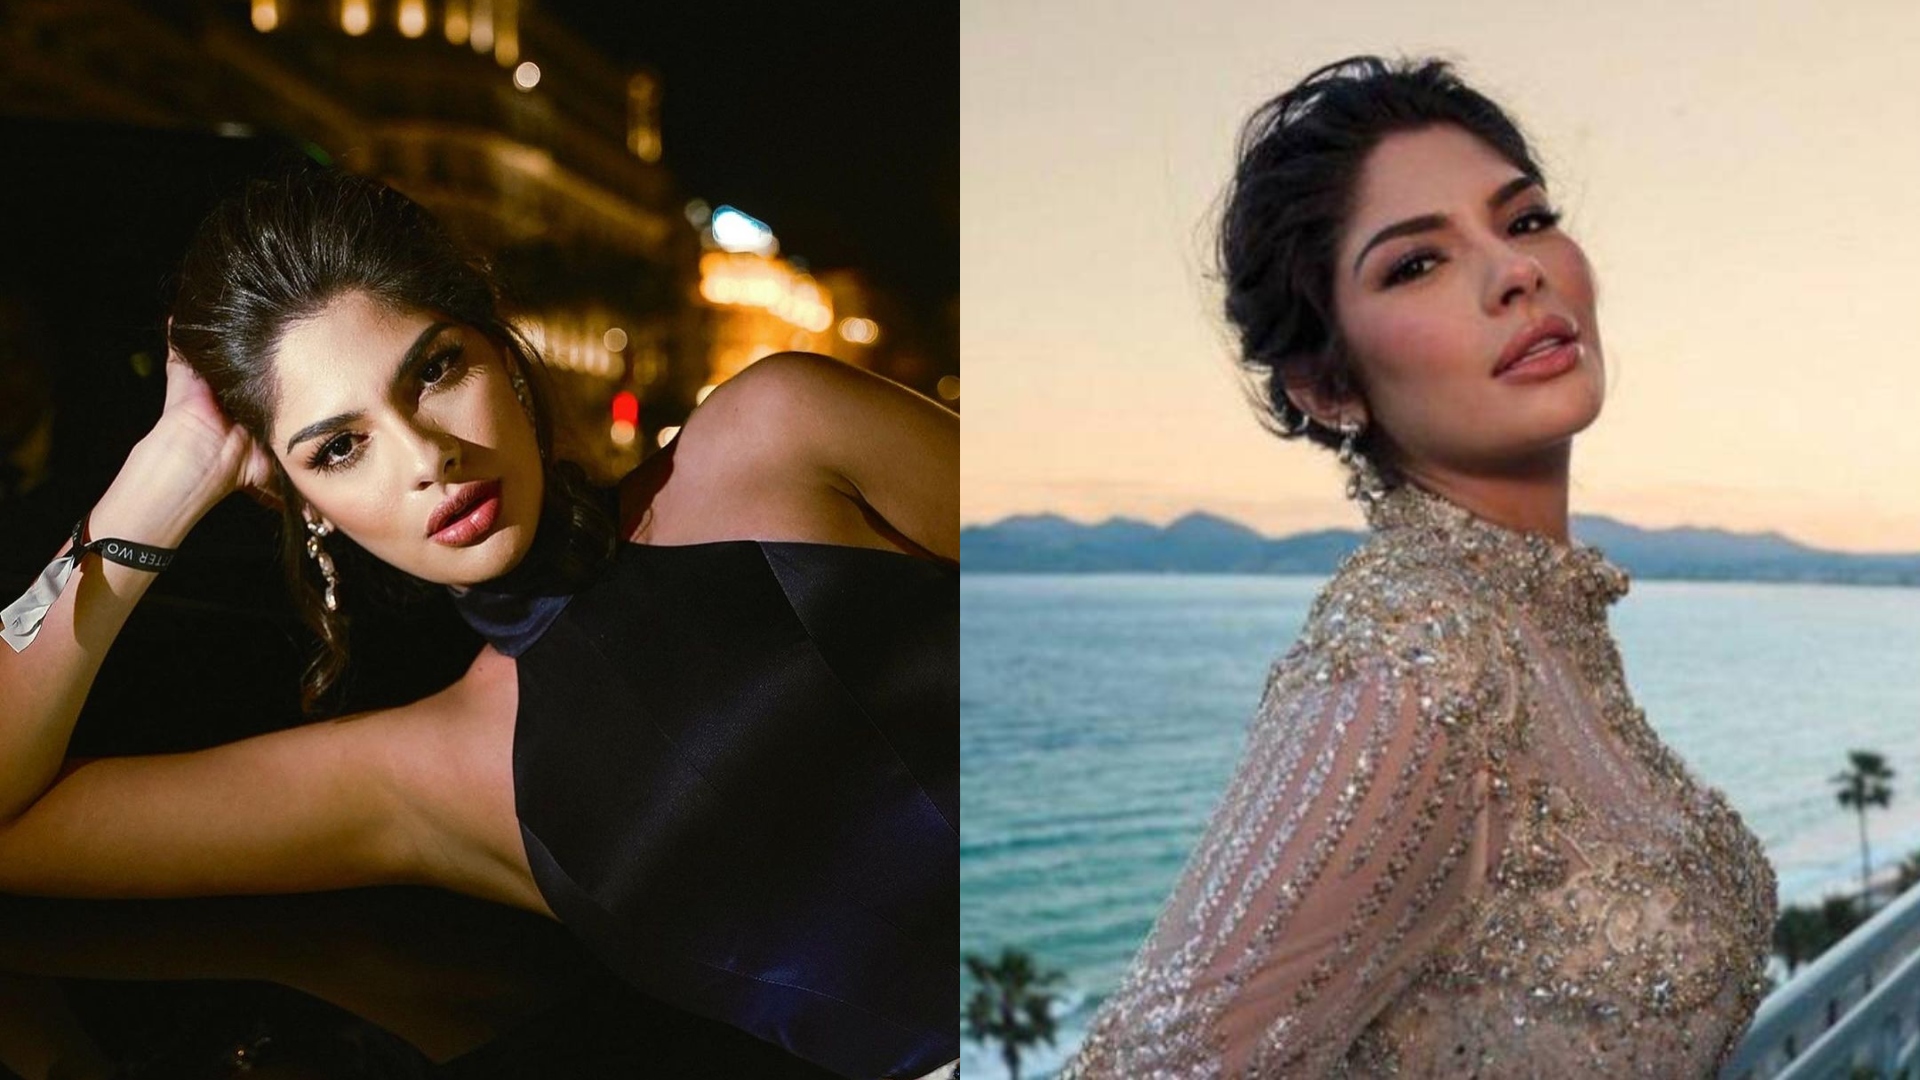 Sheynnis Palacios derrocha glamour y belleza en Festival de Cannes